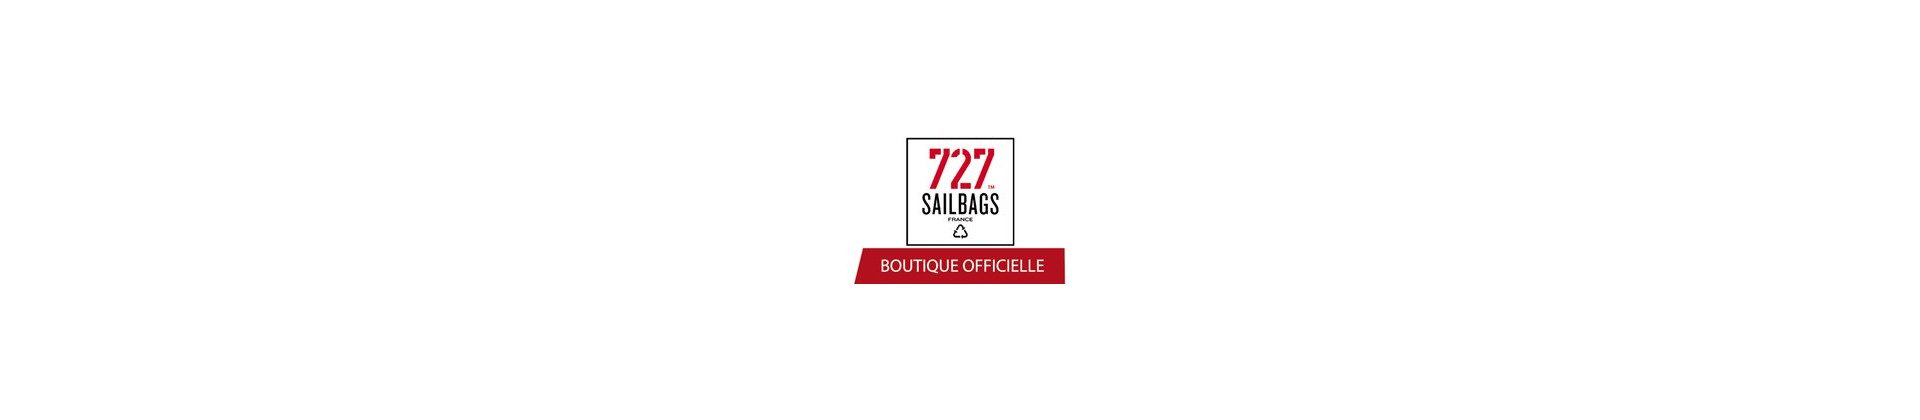 727 Sailbags Shop